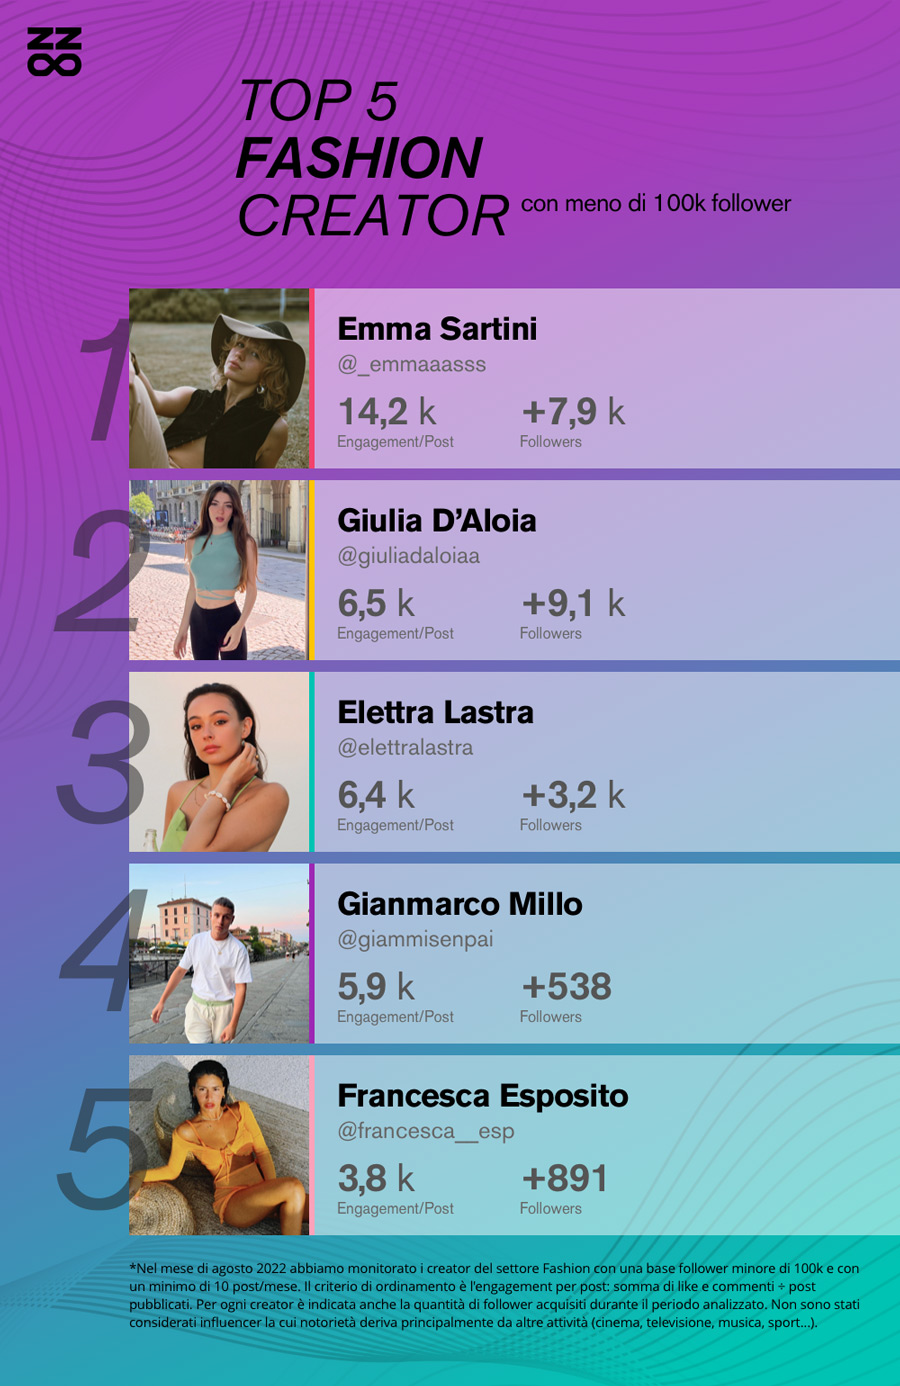 Classifica 2022 dei migliori fashion Influencer italiani con meno di 100 mila follower su Instagram:
1) @_emmaaasss
2) @giuliadaloiaa
3) @elettralastra
4) @giammisenpai
5) @francesca__esp